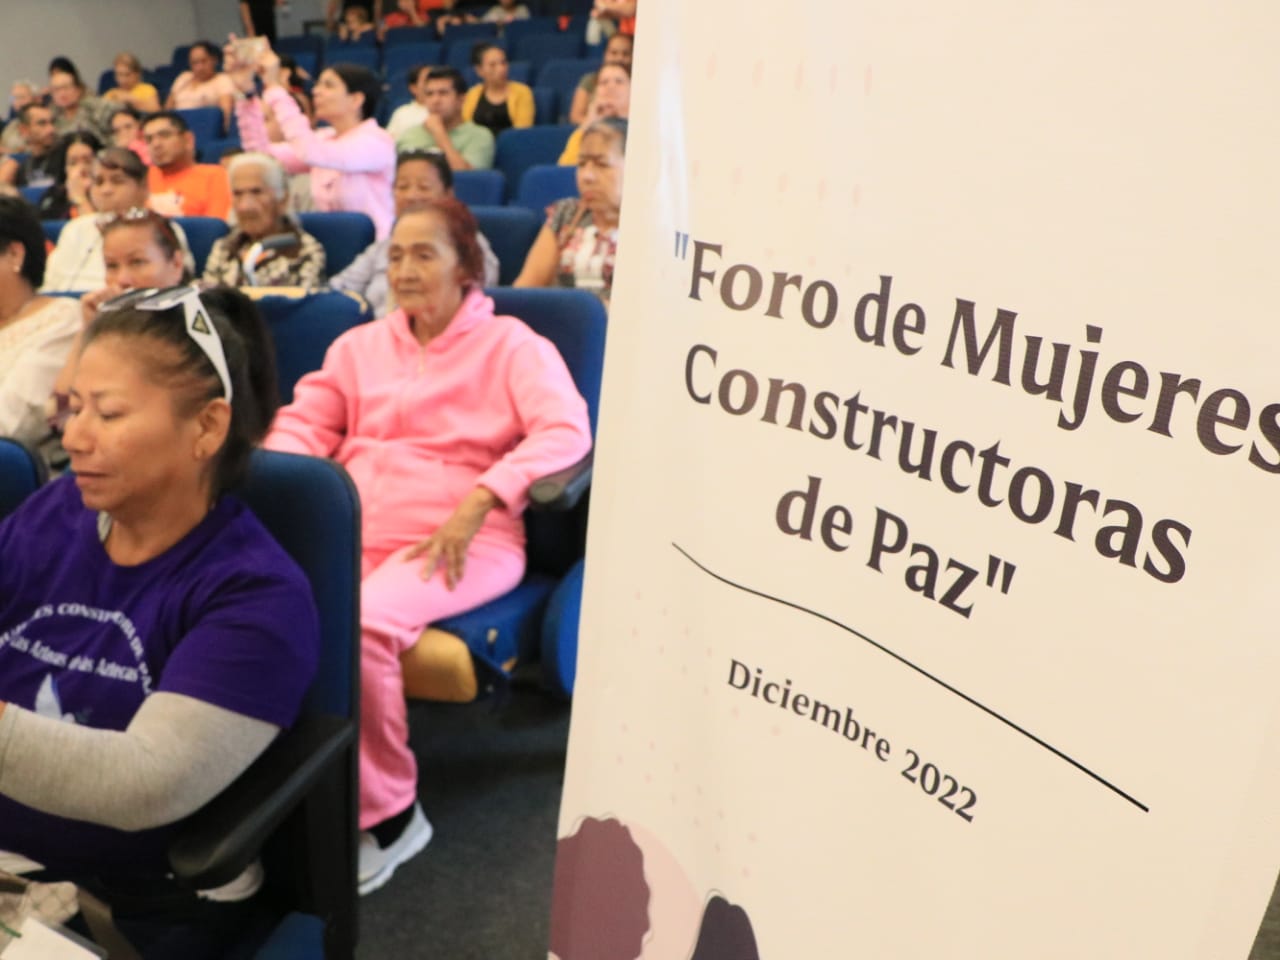 Mujeres constructoras de paz son escuchadas por la autoridad municipal en foro realizado en Mazatlán